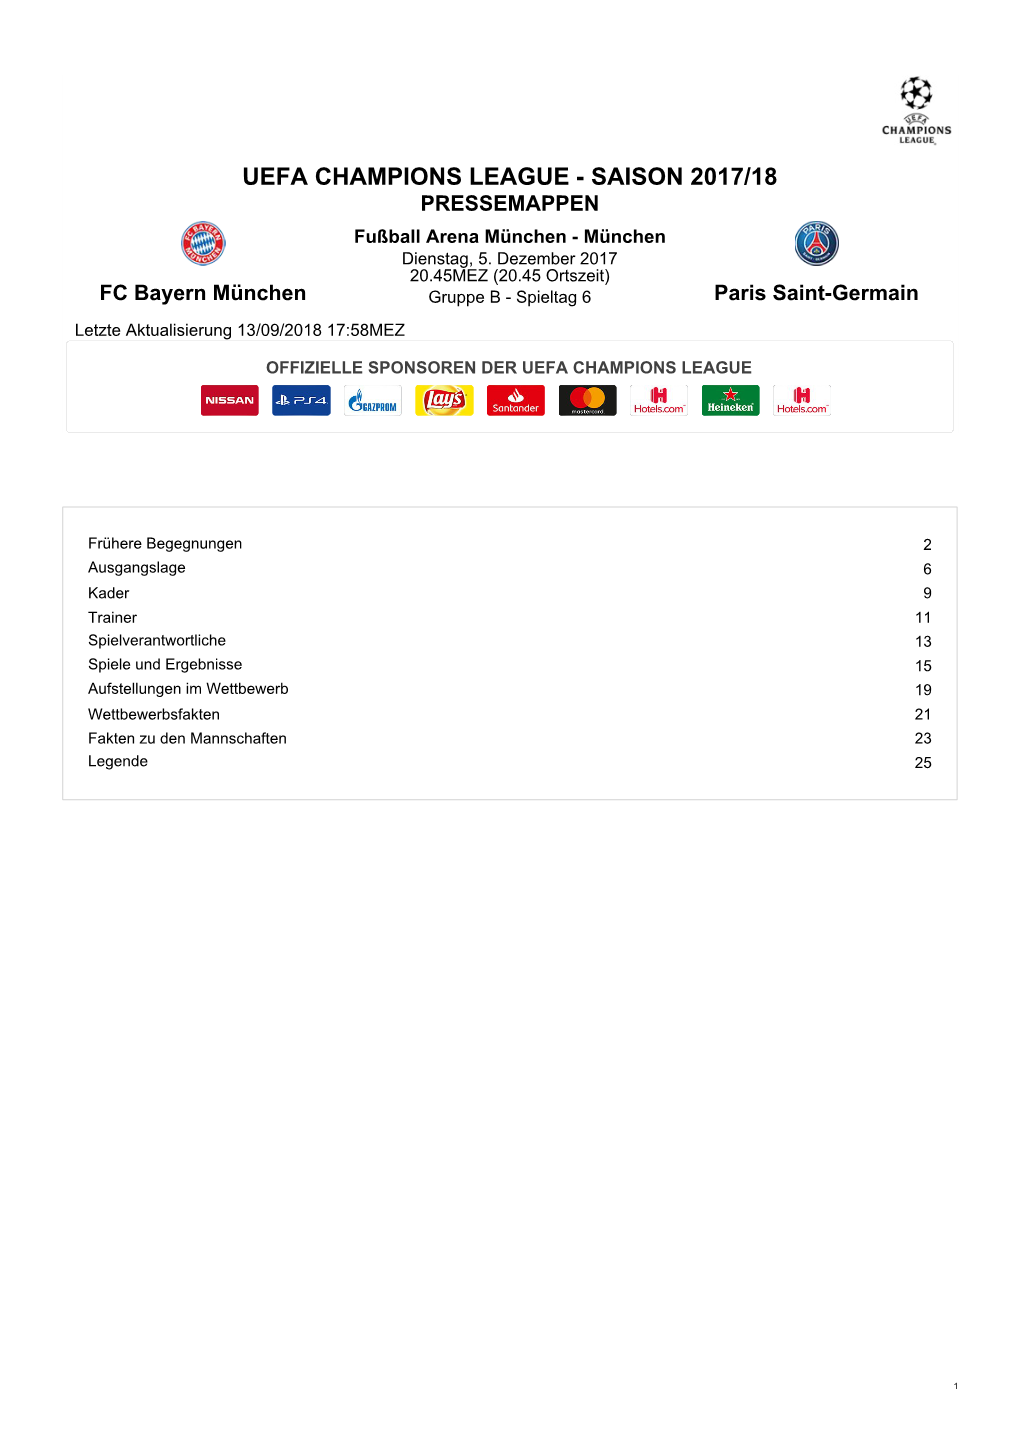 UEFA CHAMPIONS LEAGUE - SAISON 2017/18 PRESSEMAPPEN Fußball Arena München - München Dienstag, 5